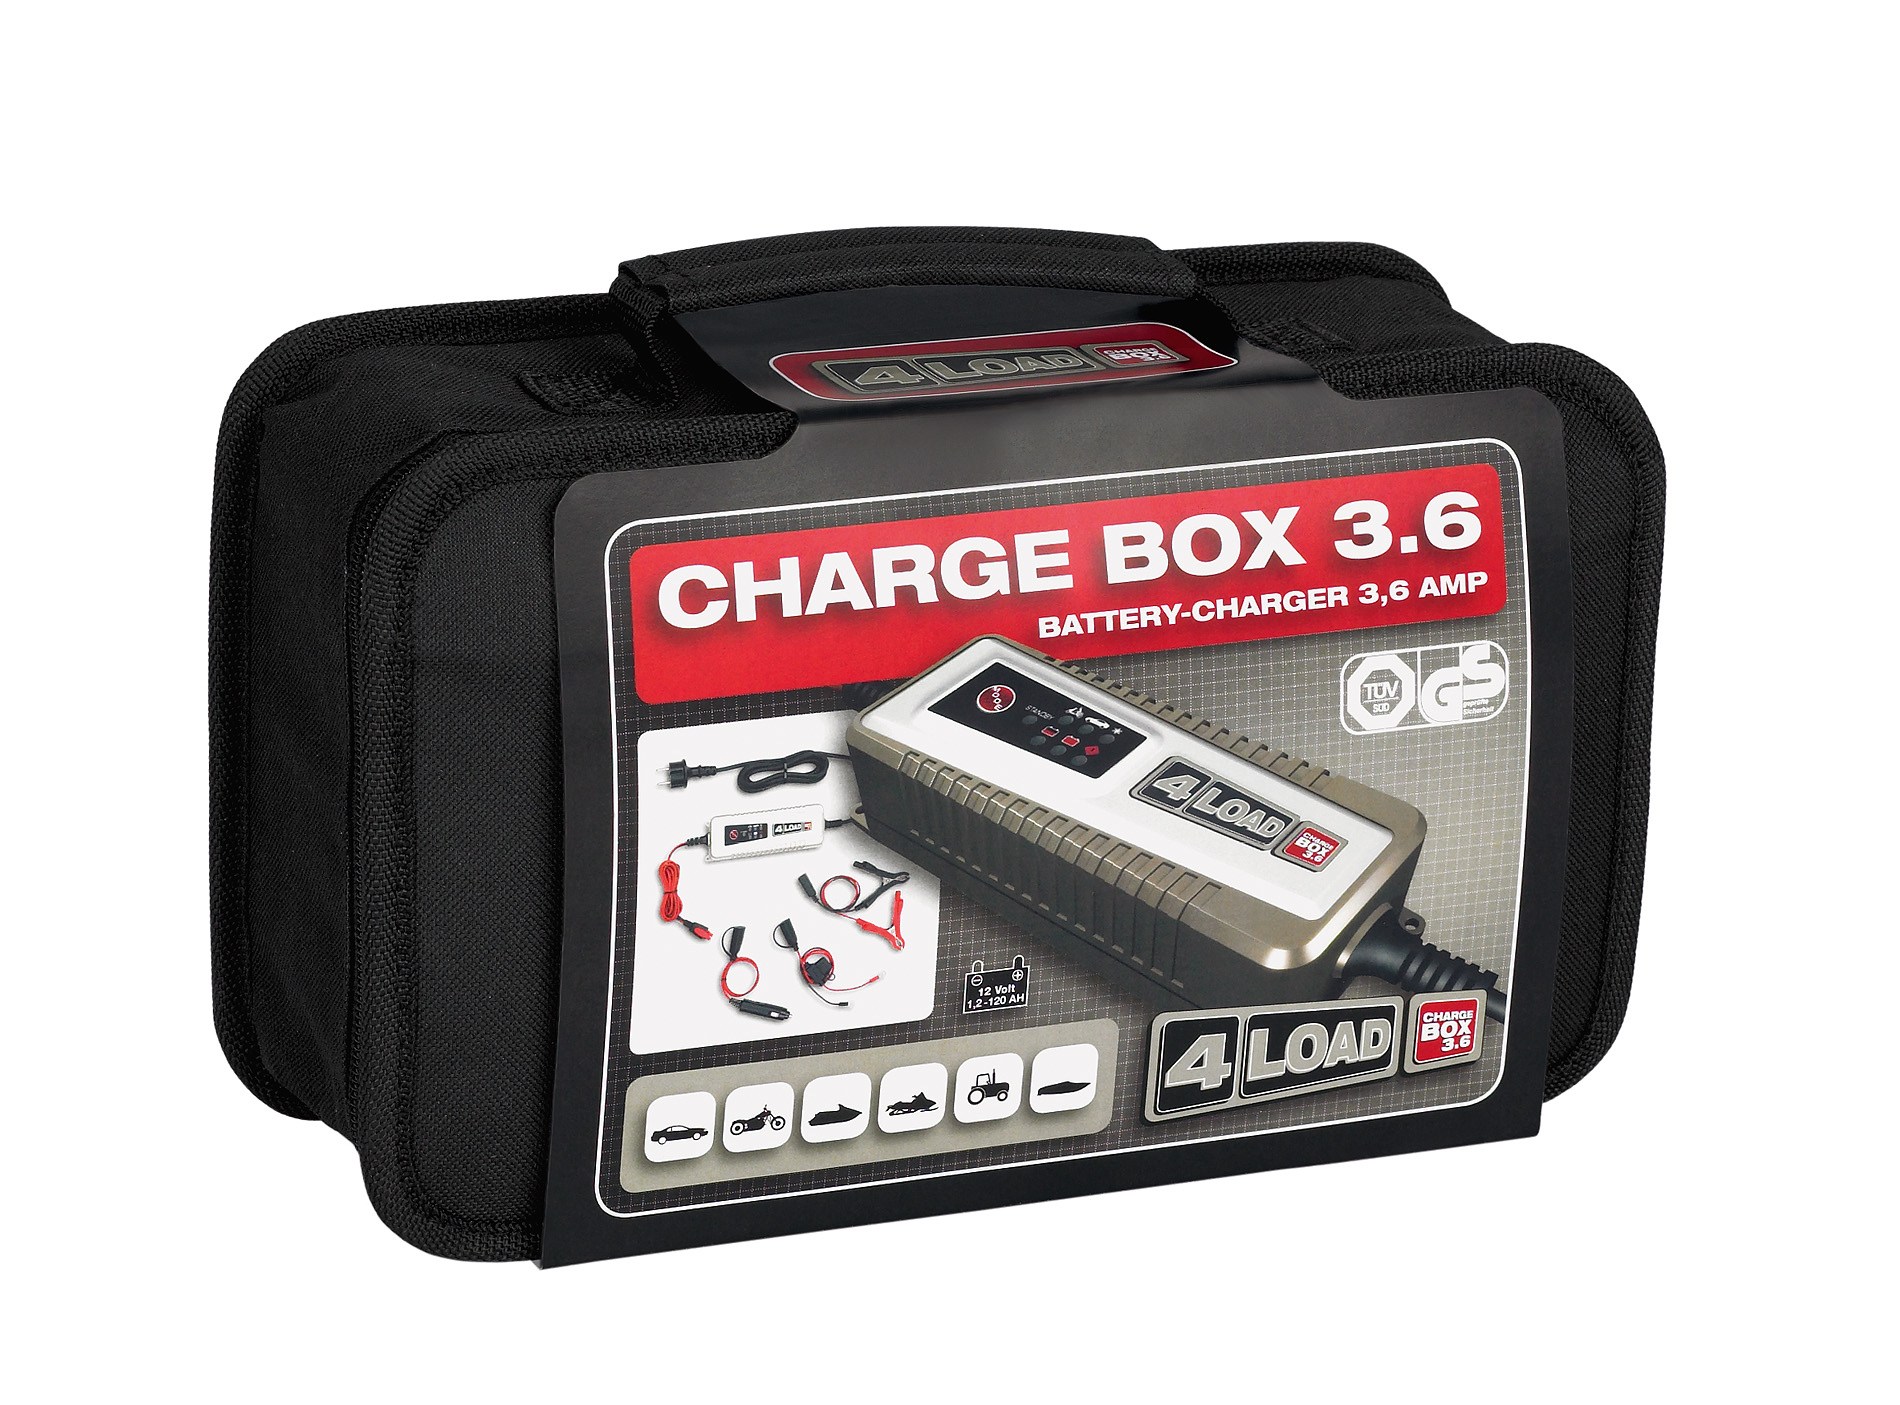 4LOAD CHARGE BOX 3.6